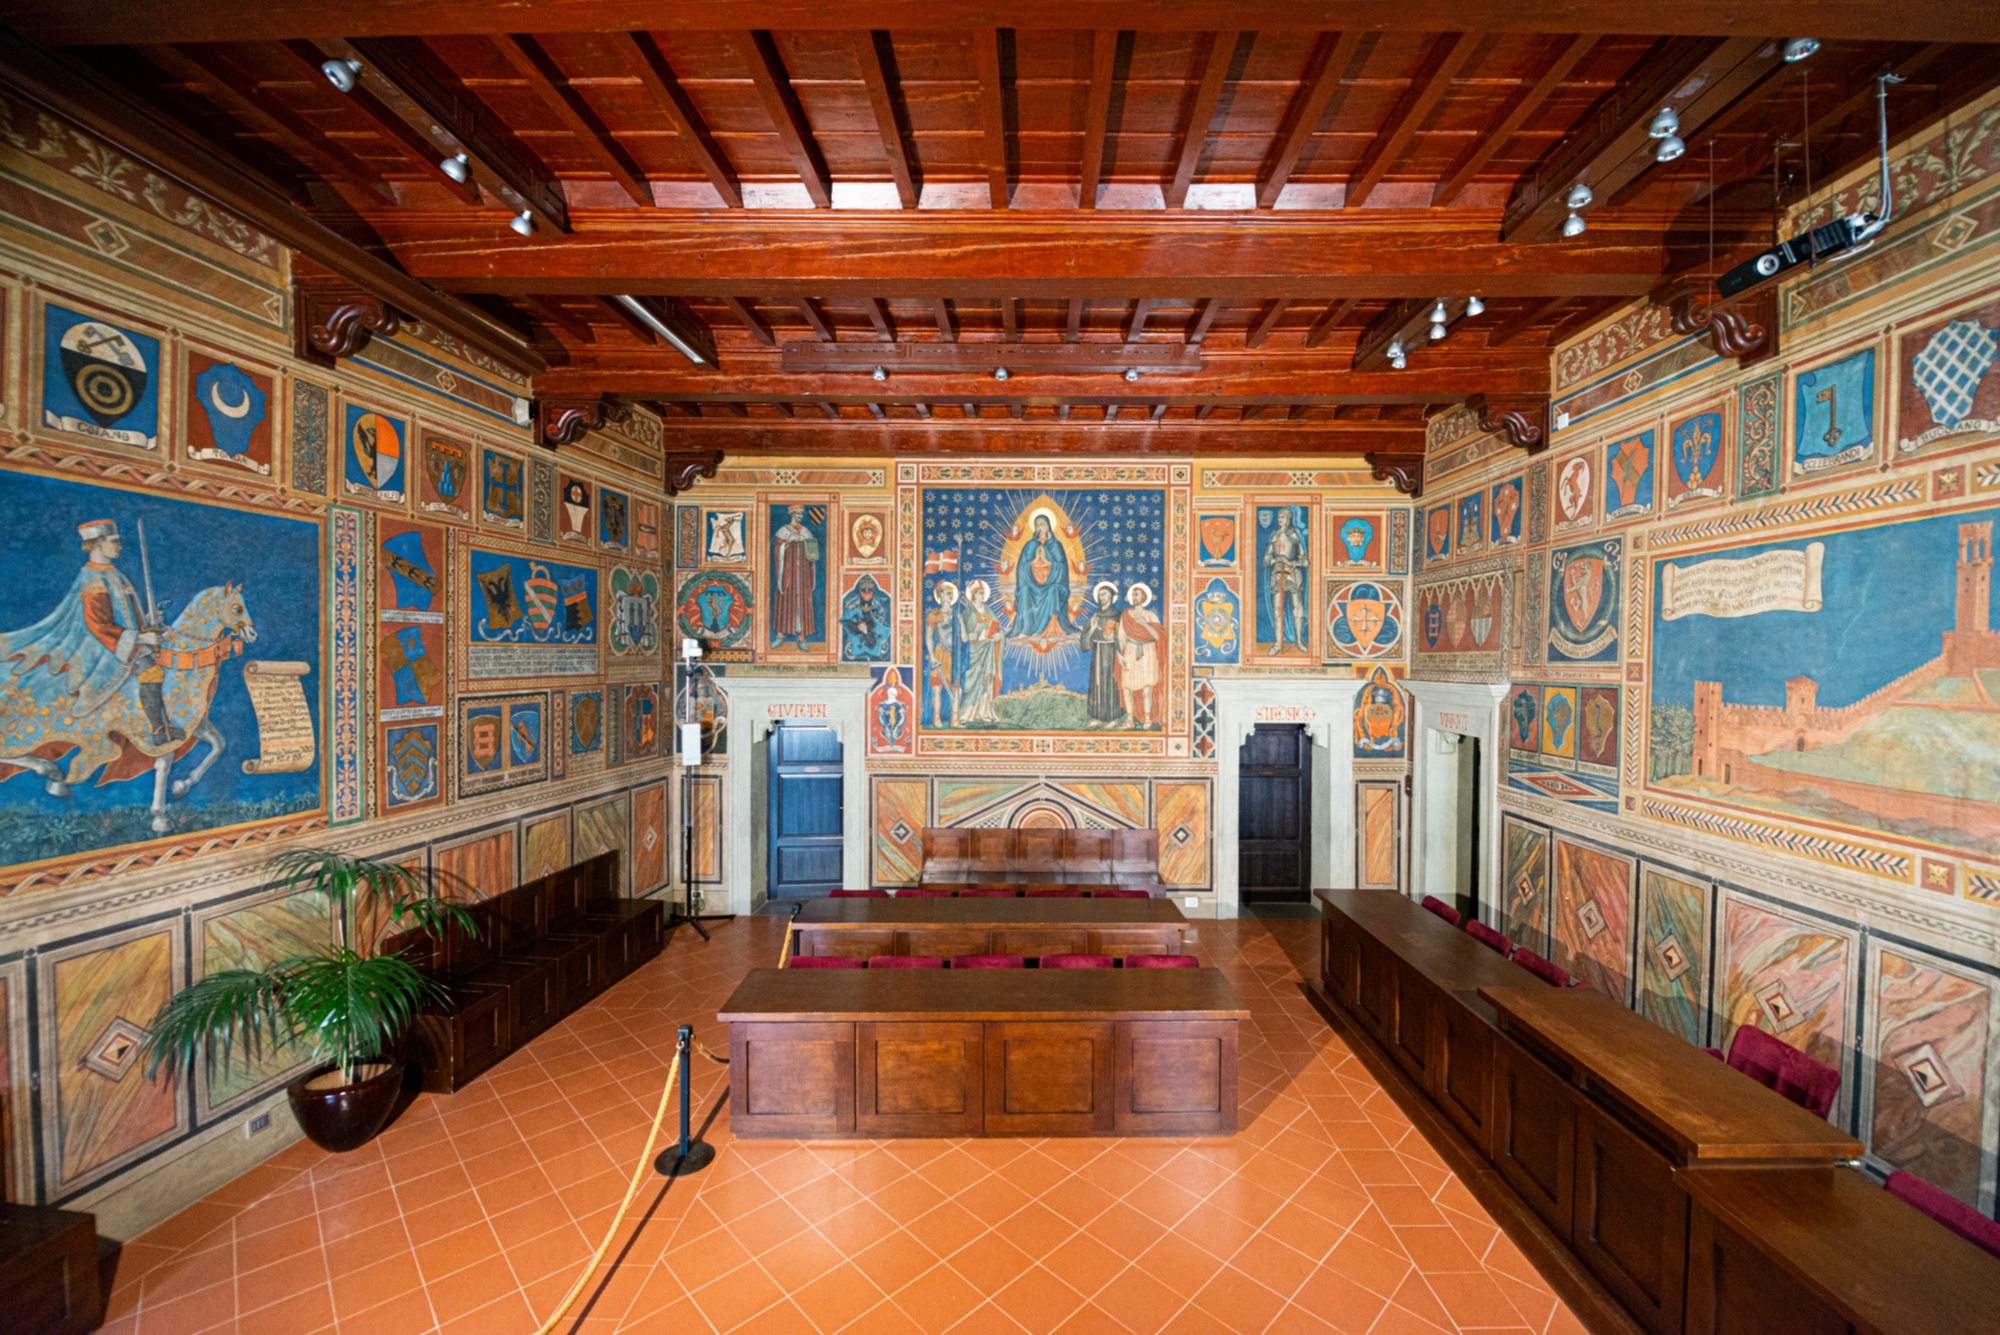 Museum of the Municipal Palace and Oratory of Loretino